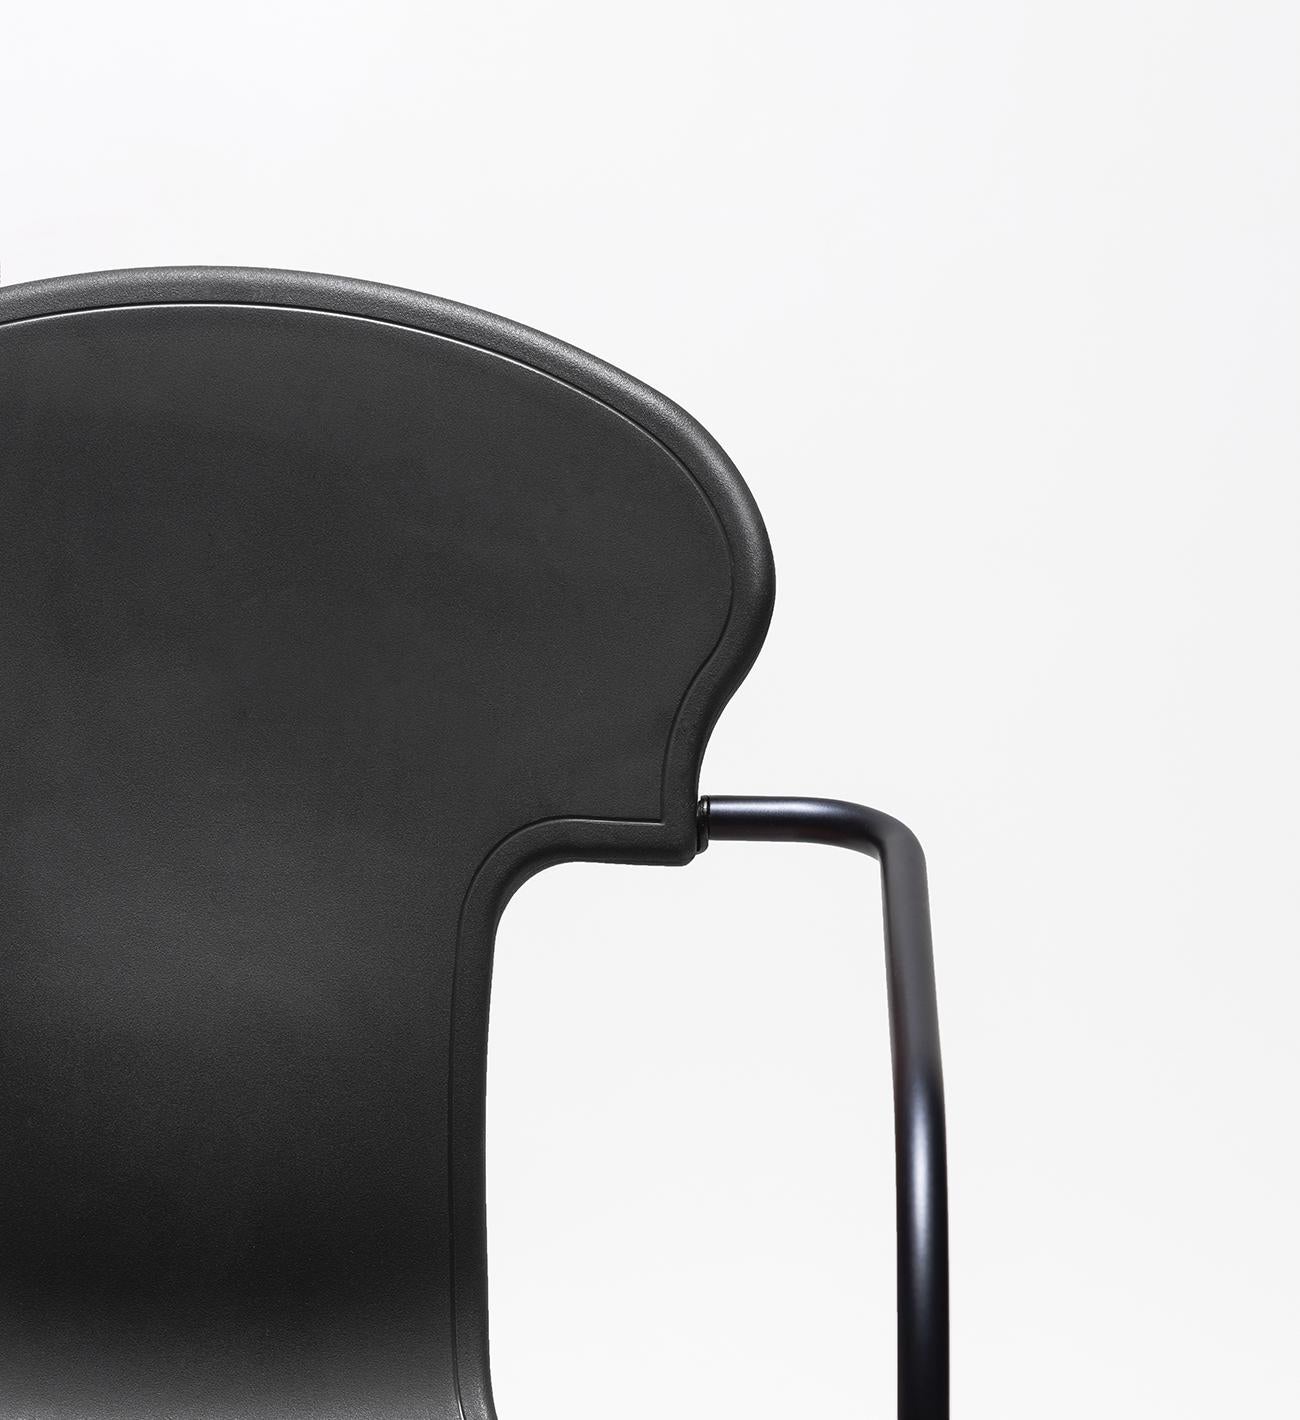 En 2008, Oscar Tusquets a revu le design de sa célèbre chaise Variously et a imaginé cette version plus petite et actualisée, présentée dans un noir anodique peint.

L'assise est disponible en polypropylène injecté blanc ou noir et revêtue de